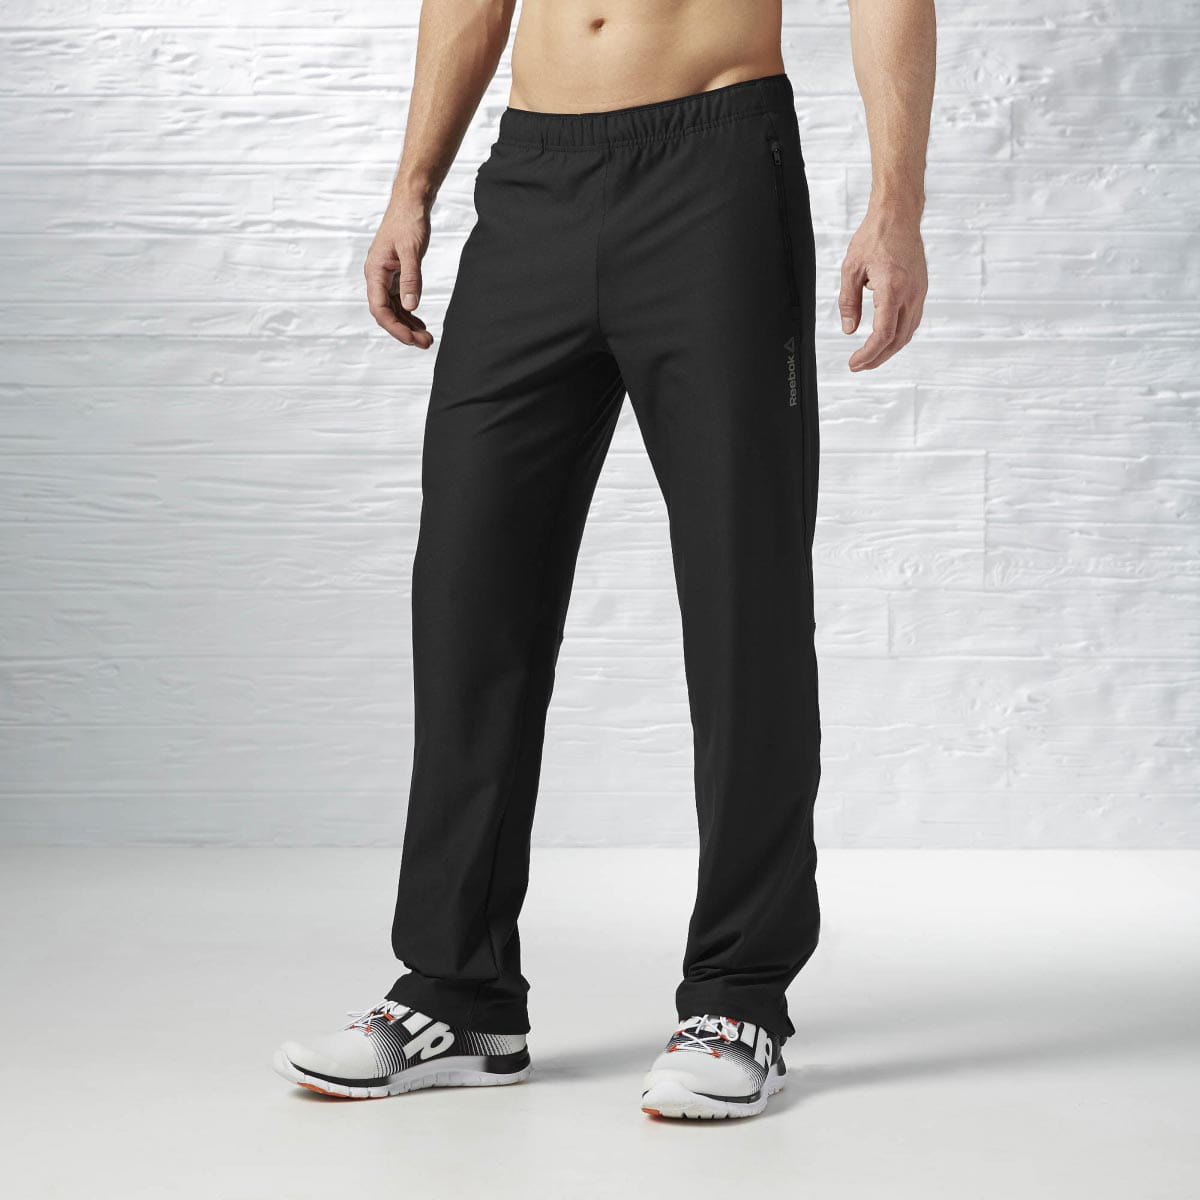 Pánské sportovní kalhoty Reebok One Series Advantage Bioknit Pant